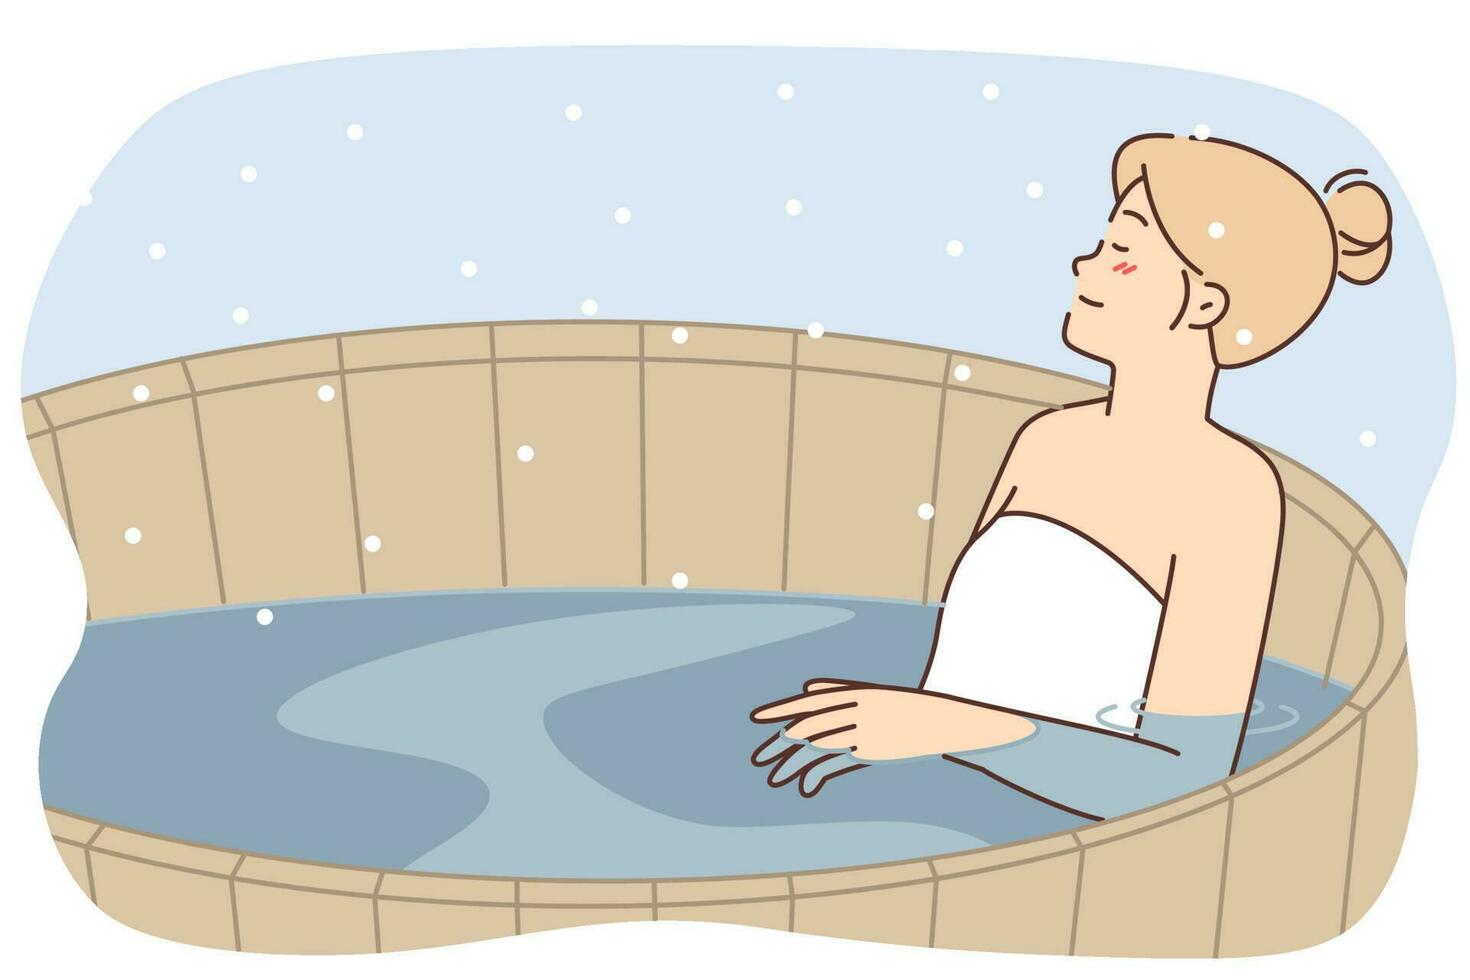 vrouw ontspant in houten Fins sauna zwembad met heet water genieten van warm buitenshuis spa. ontspannen meisje zittend in heet zwembad gedurende Scandinavisch behandelingen en buitenshuis sauna in besneeuwd winter weer vector